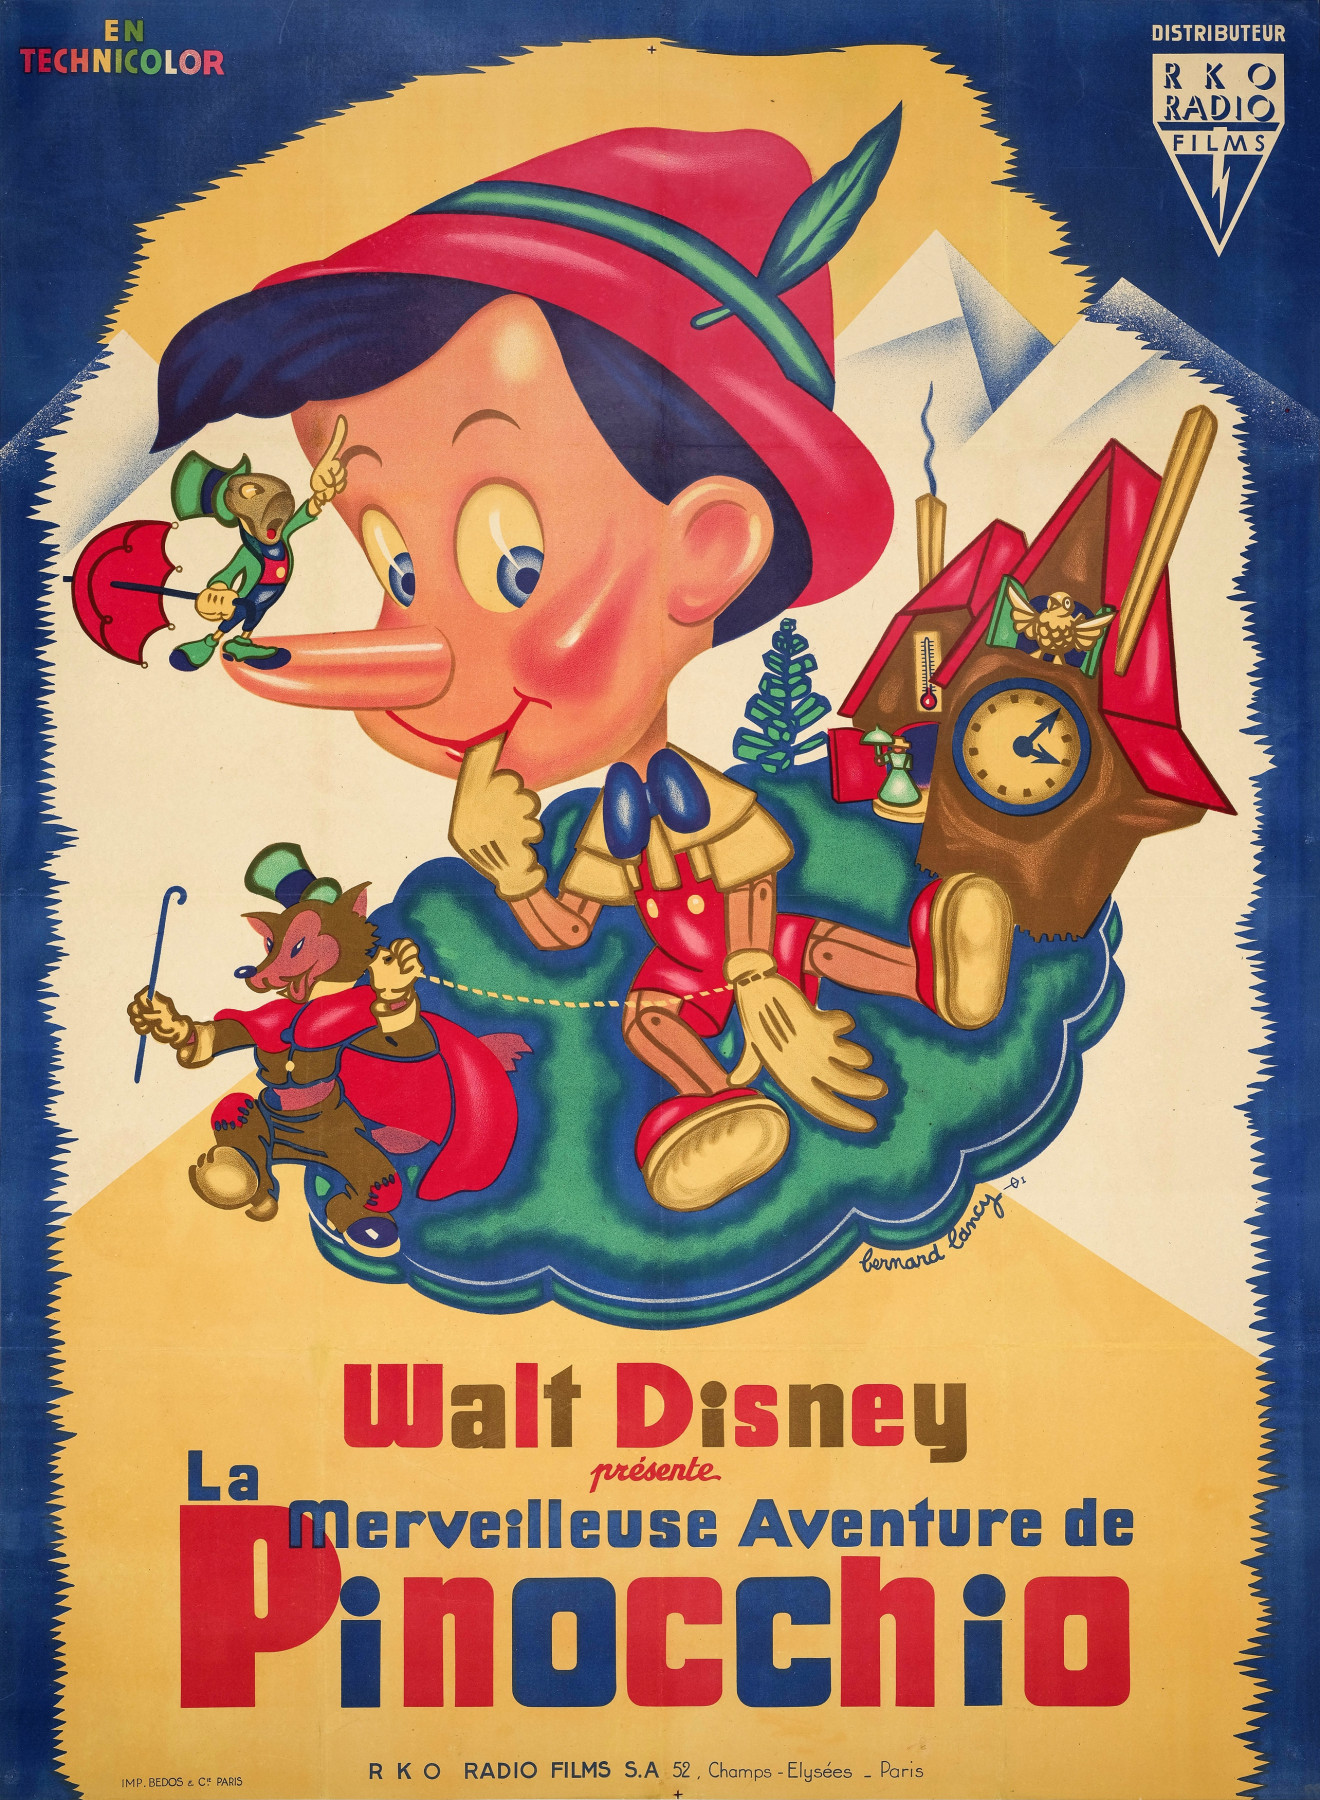 L'affiche de Pinocchio